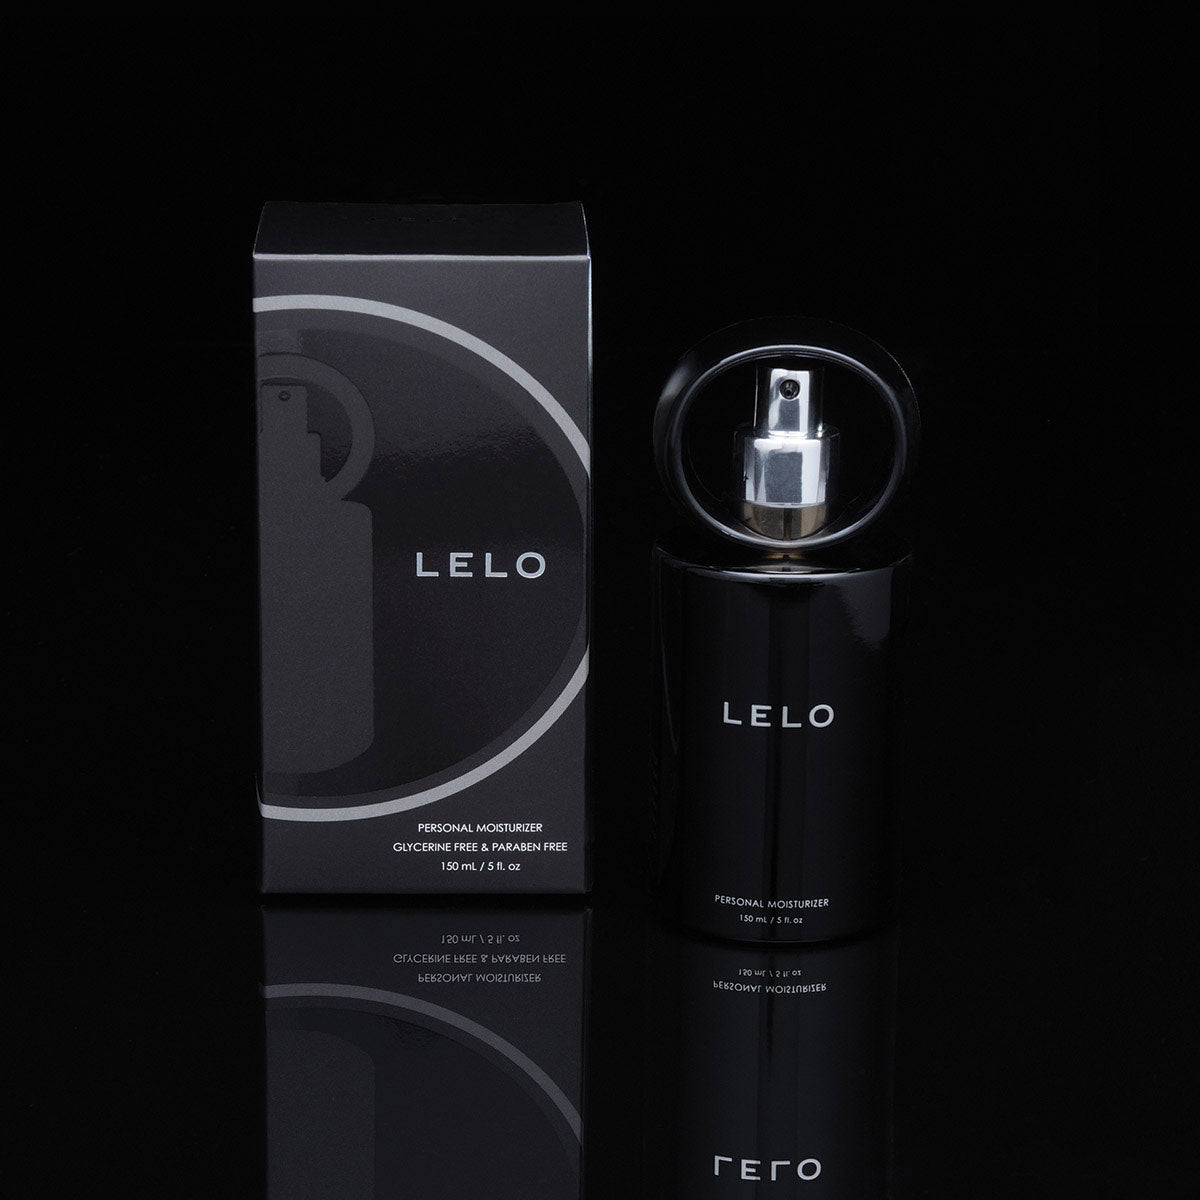 LELO Personal Moisturizer 150ml Bottle